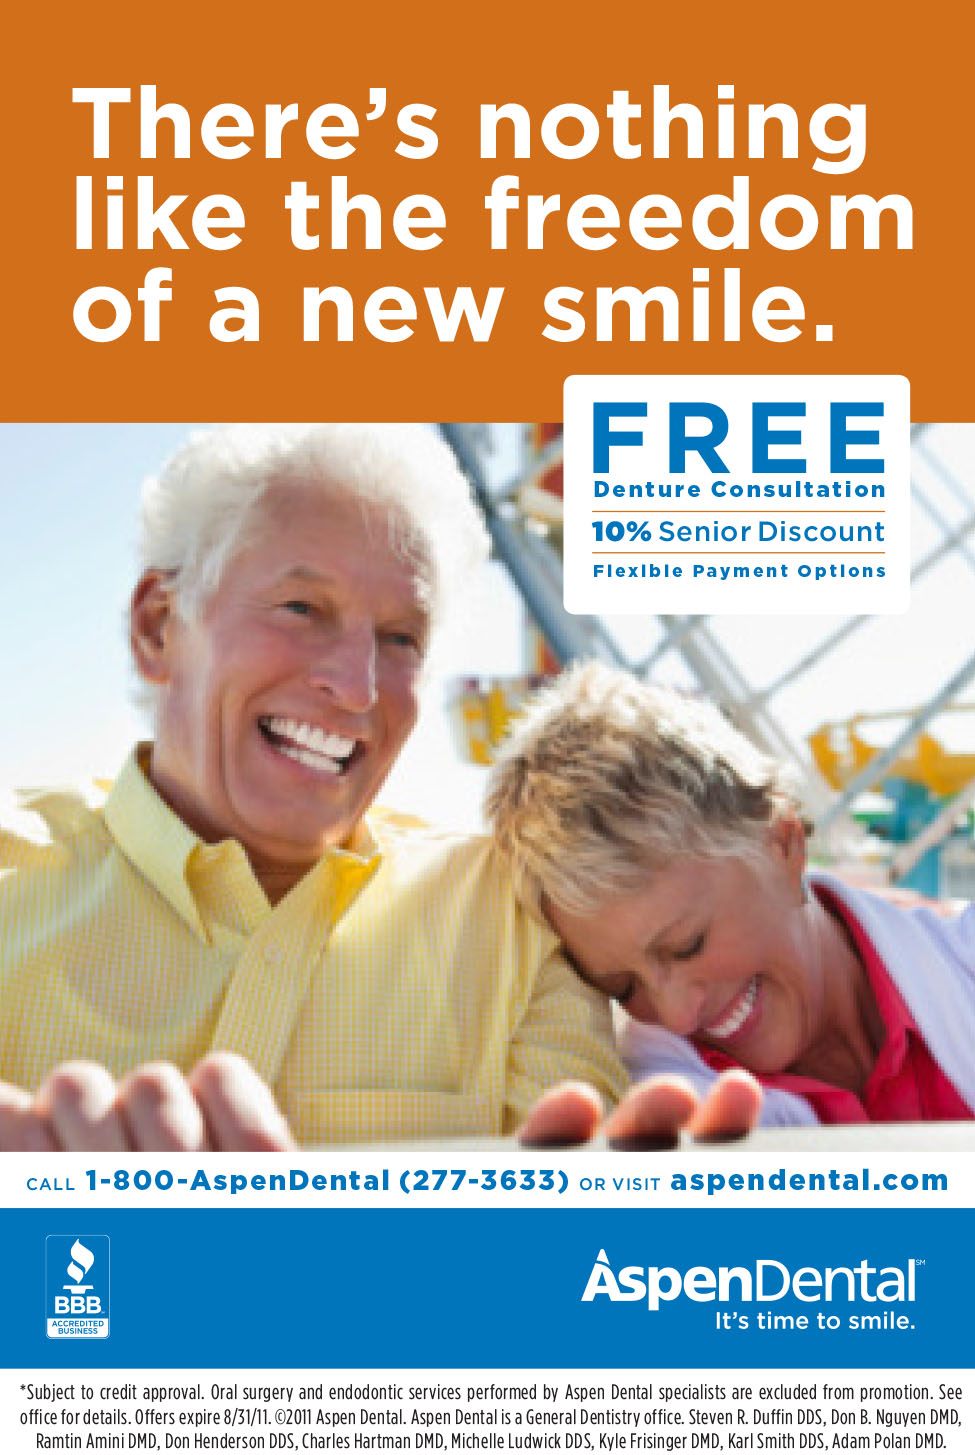 does aspen dental offer senior discounts?